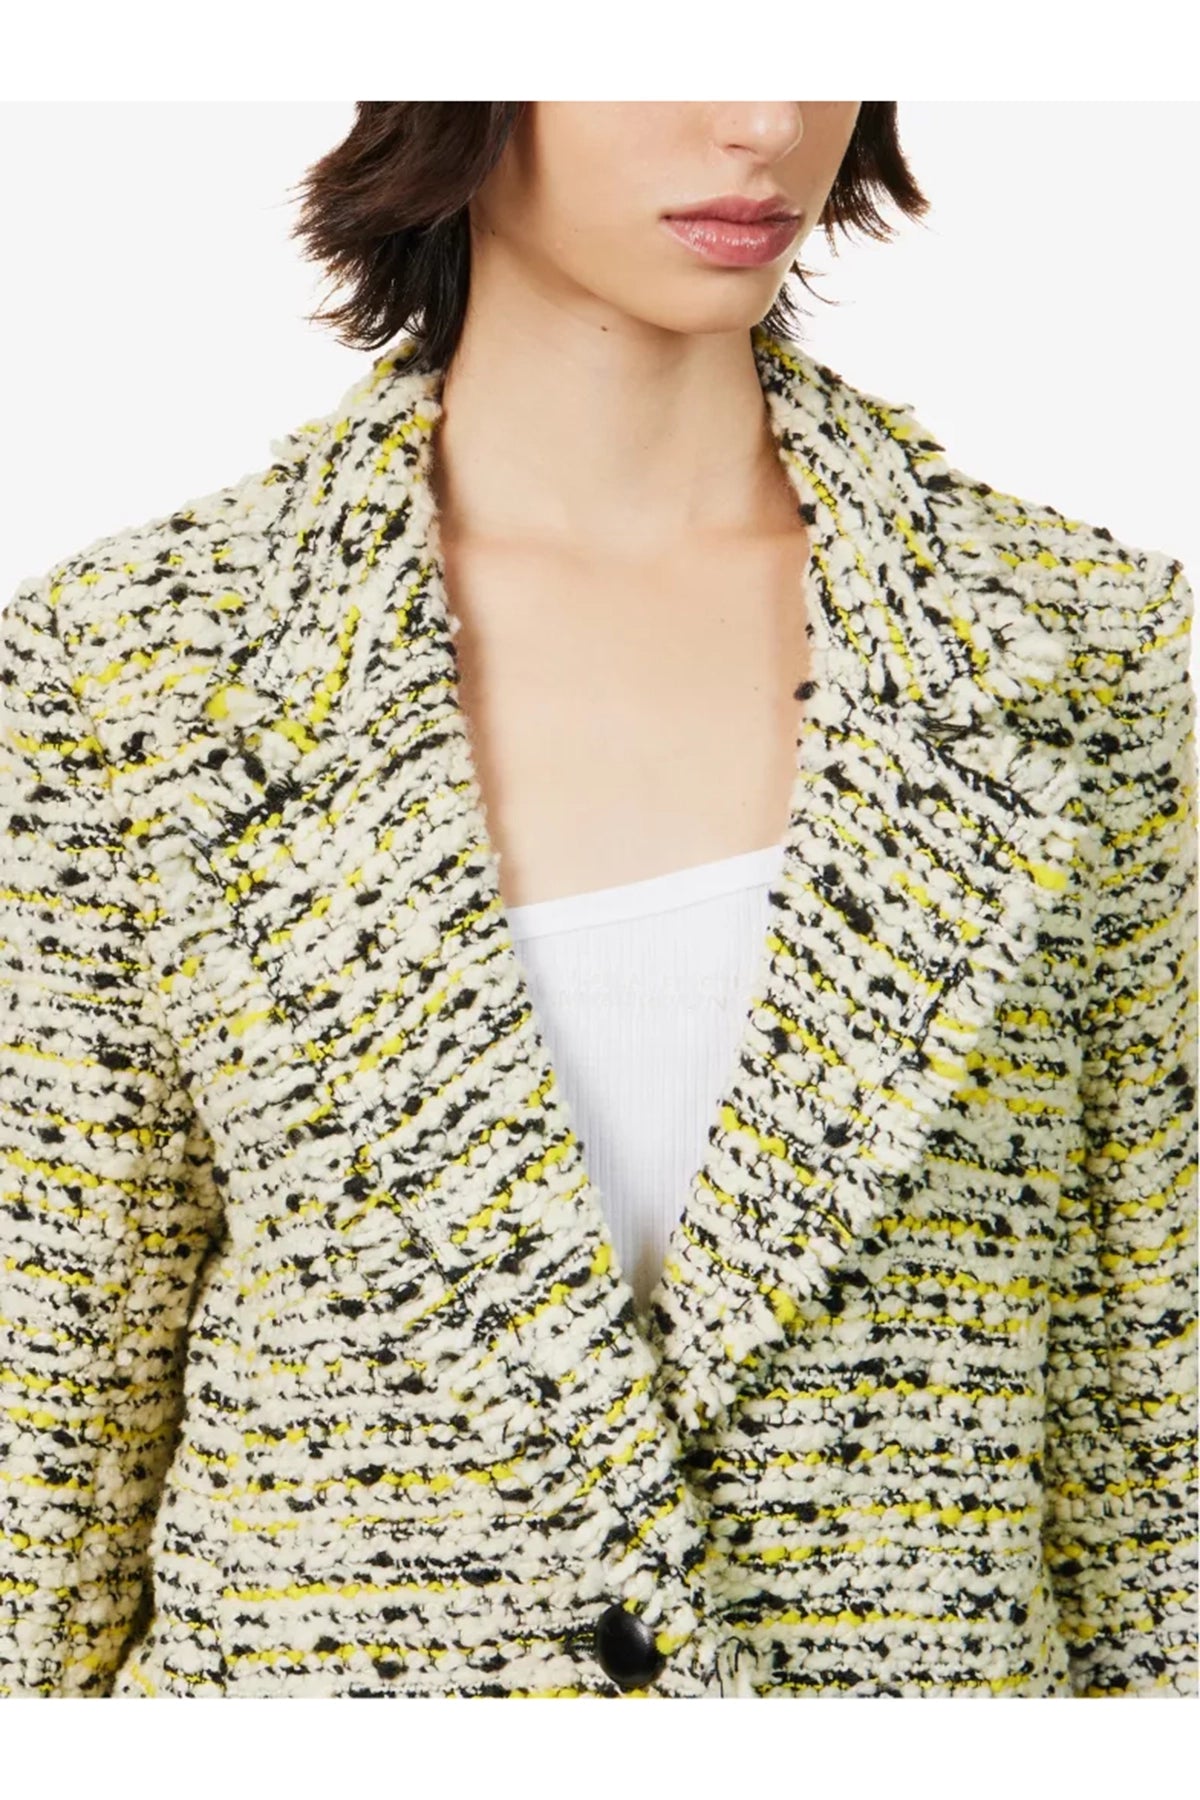 Isabel Marant Etienne Tweed-Textured Wool Blend Jacket